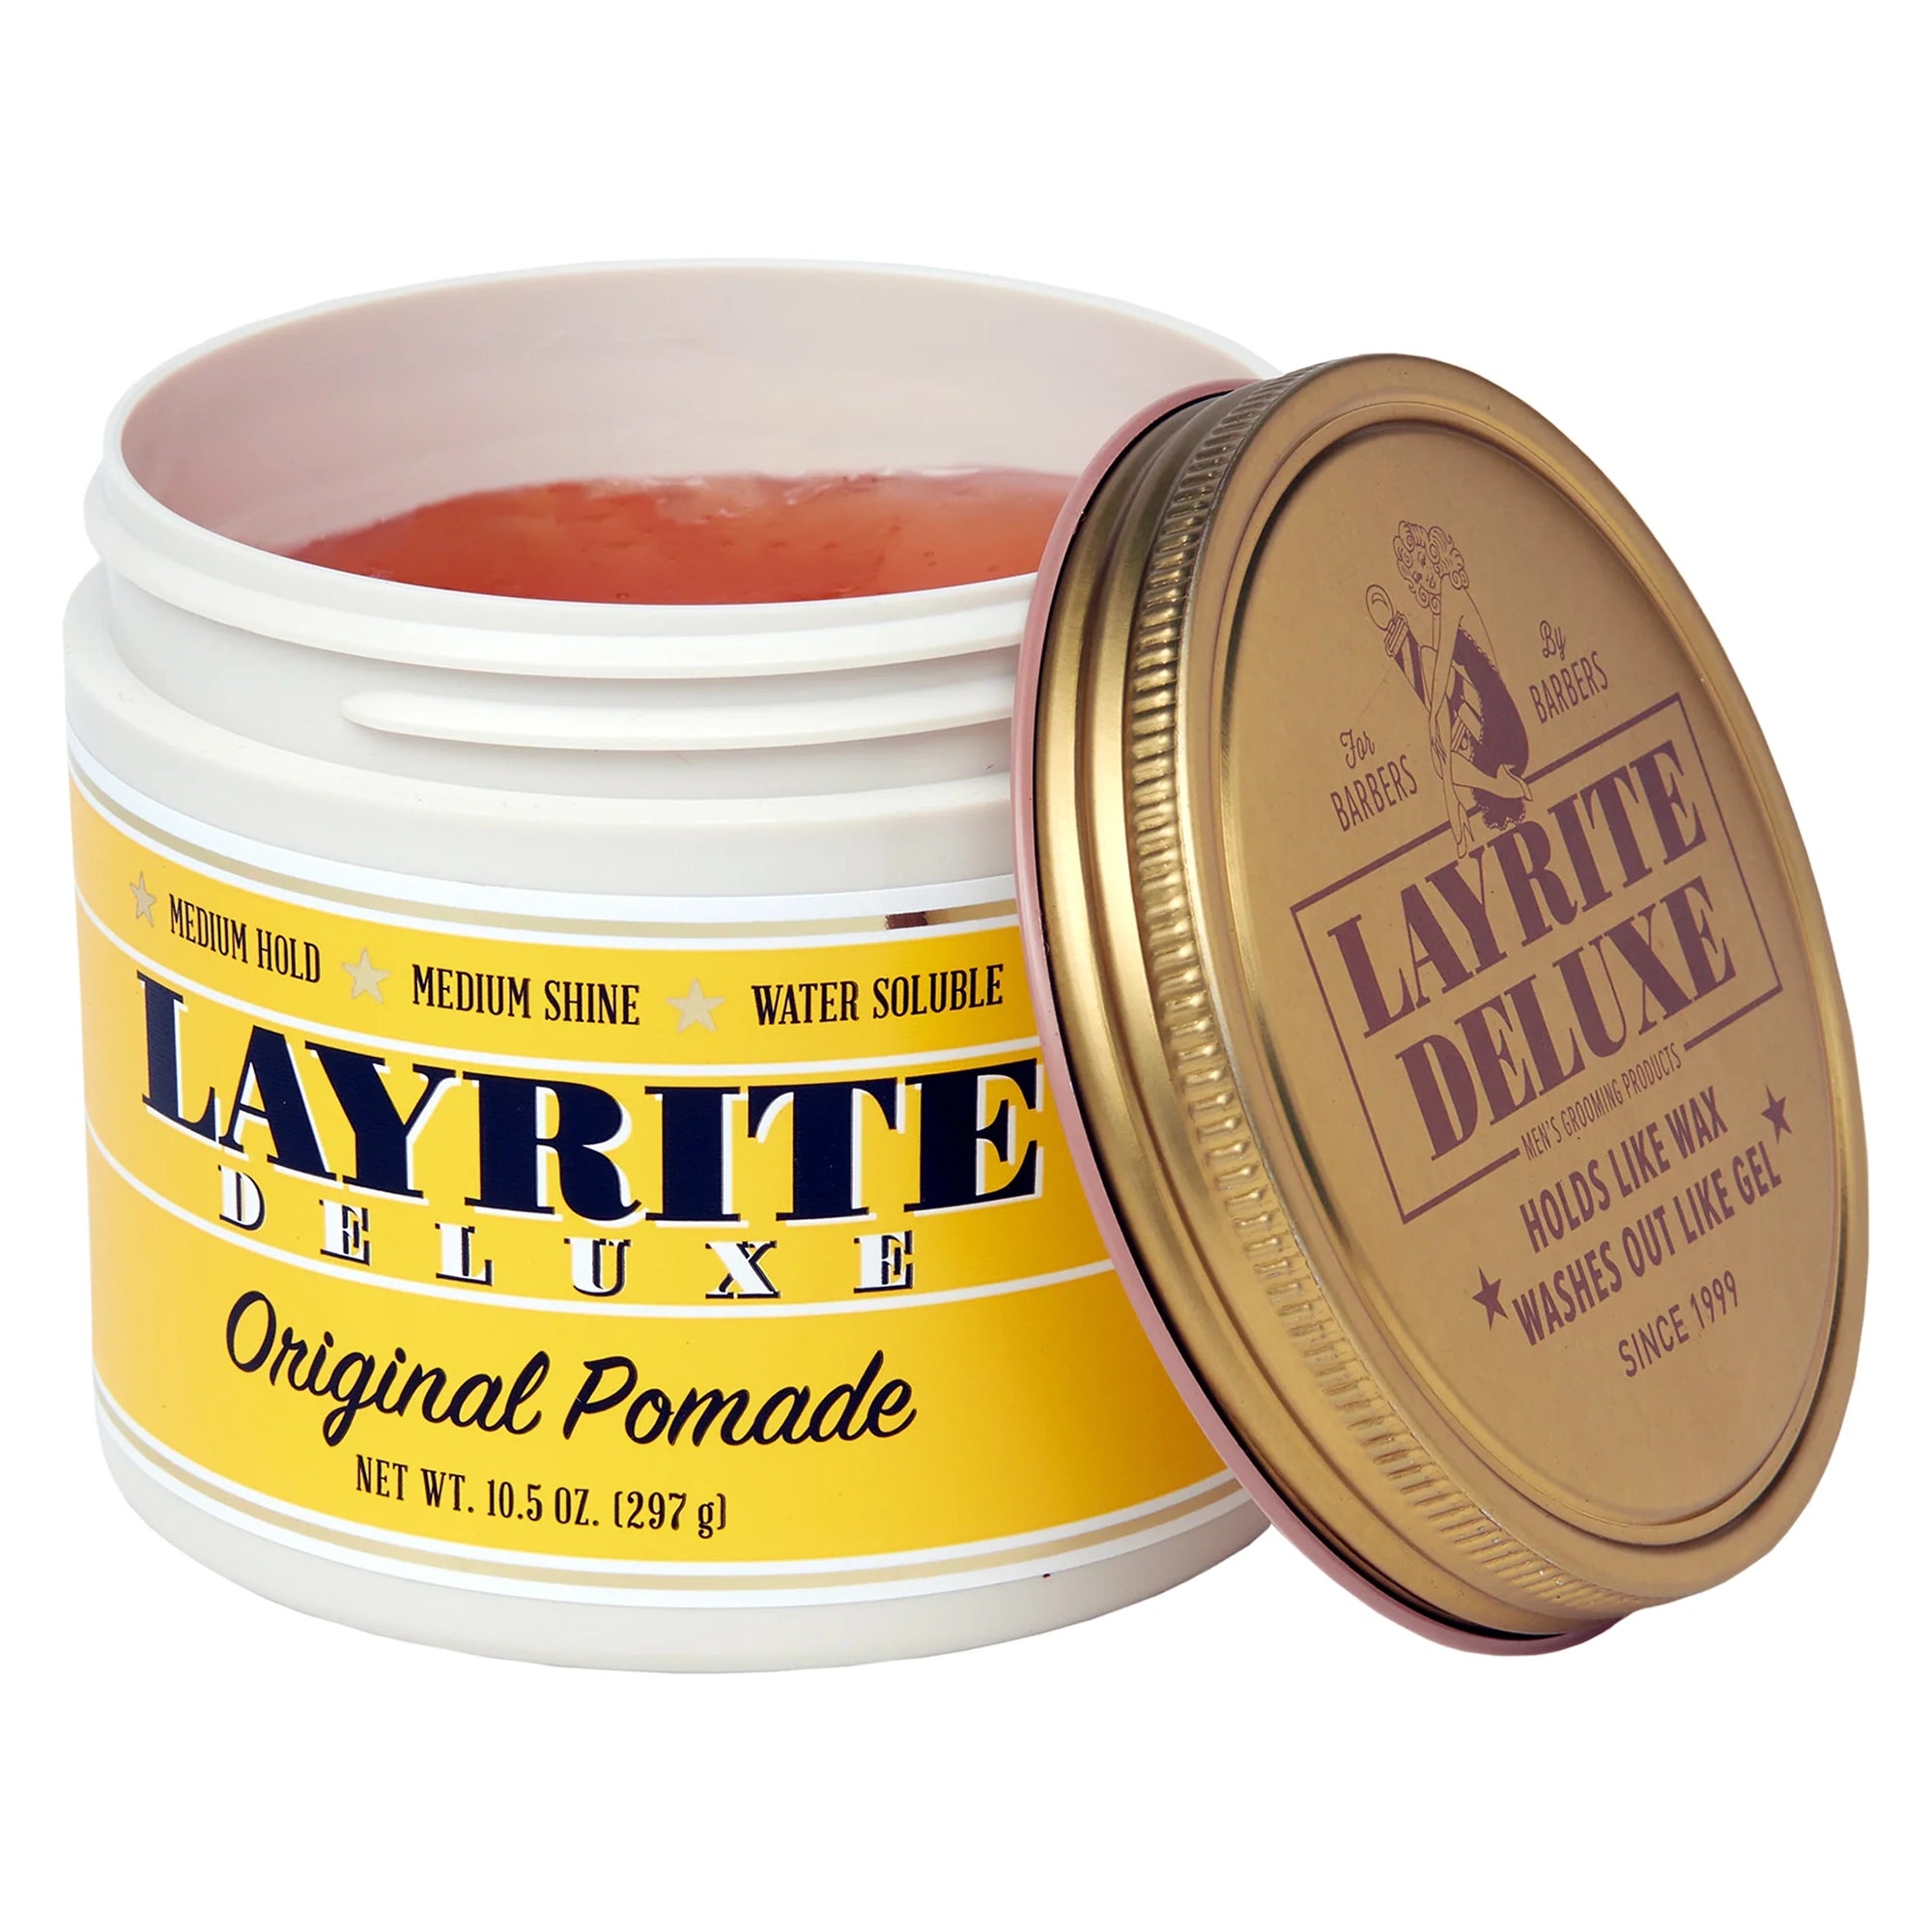 Layrite Original Pomade 10.5oz / 10.5